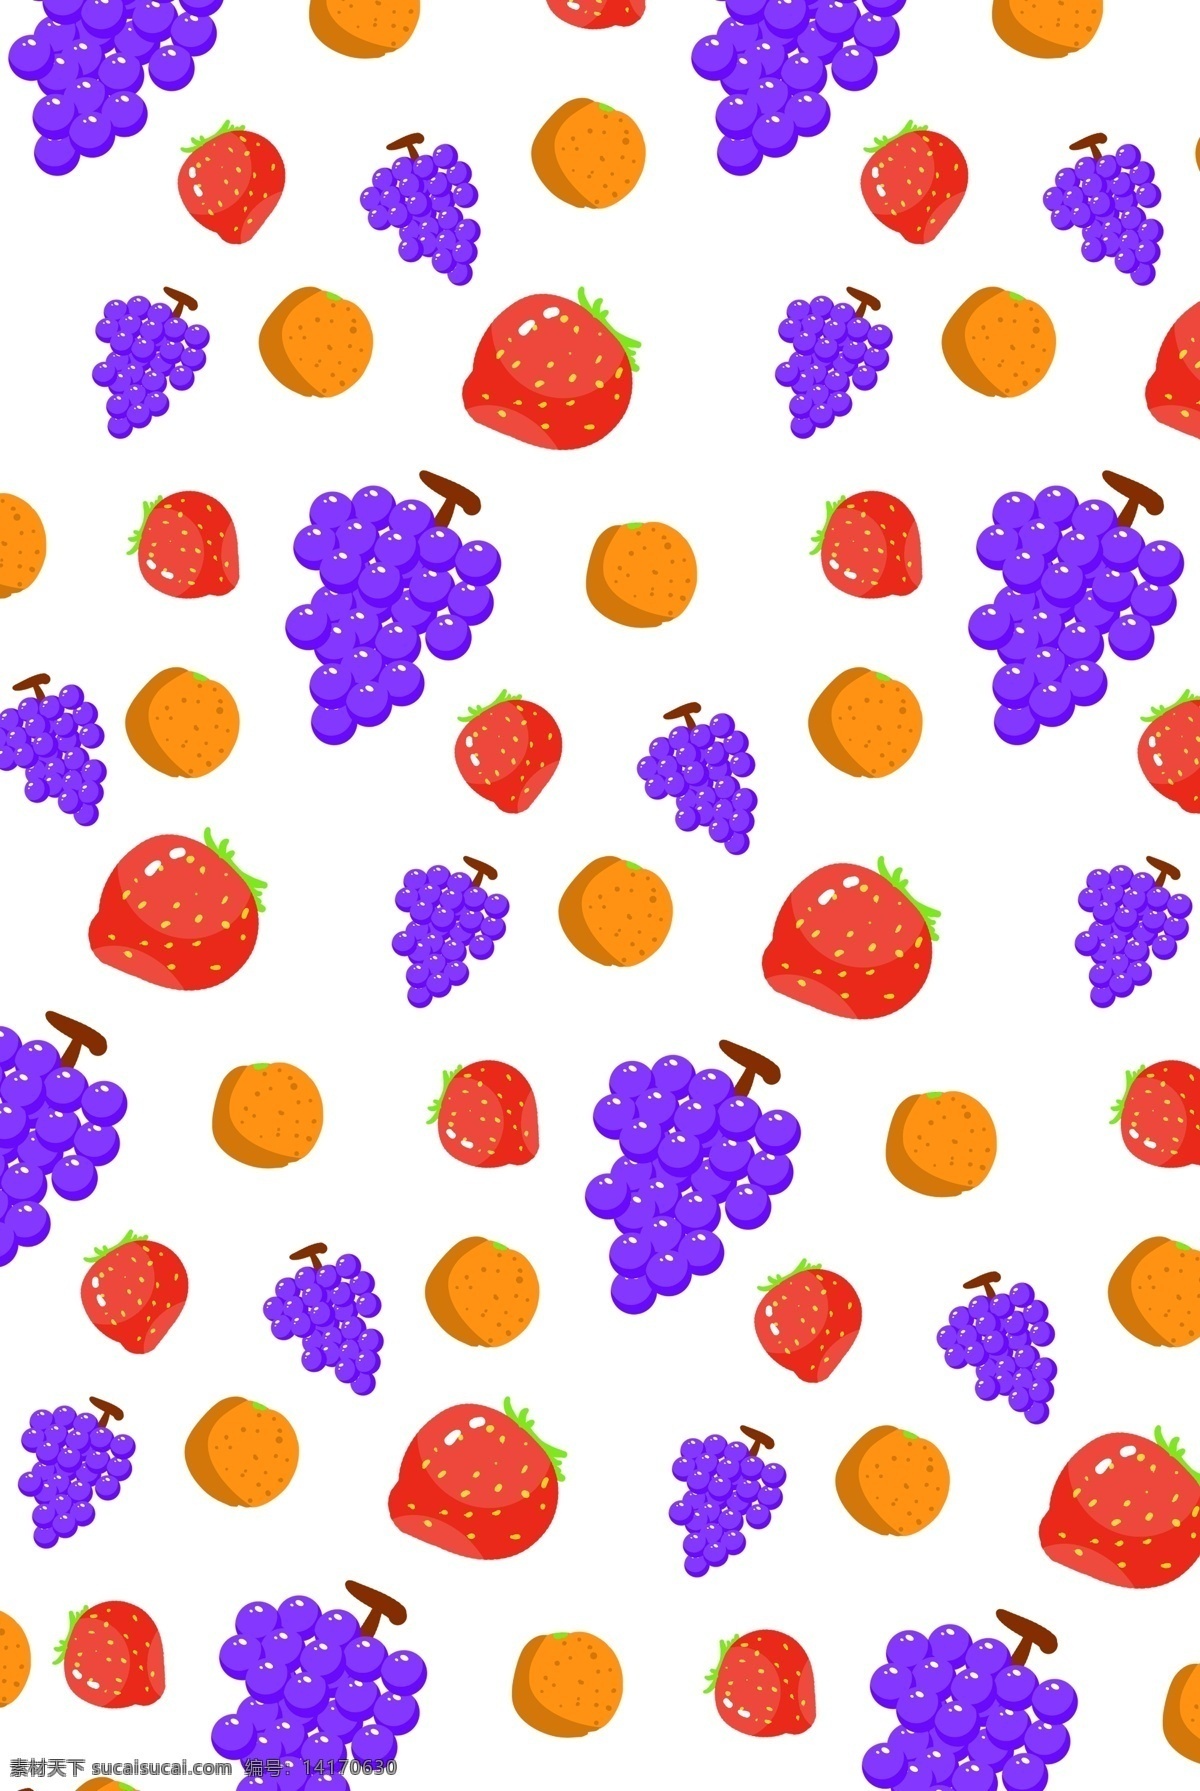 紫色 葡萄 底纹 装饰 紫色葡萄底纹 红色草莓底纹 手绘底纹装饰 美食底纹 底纹装饰 水果底纹插画